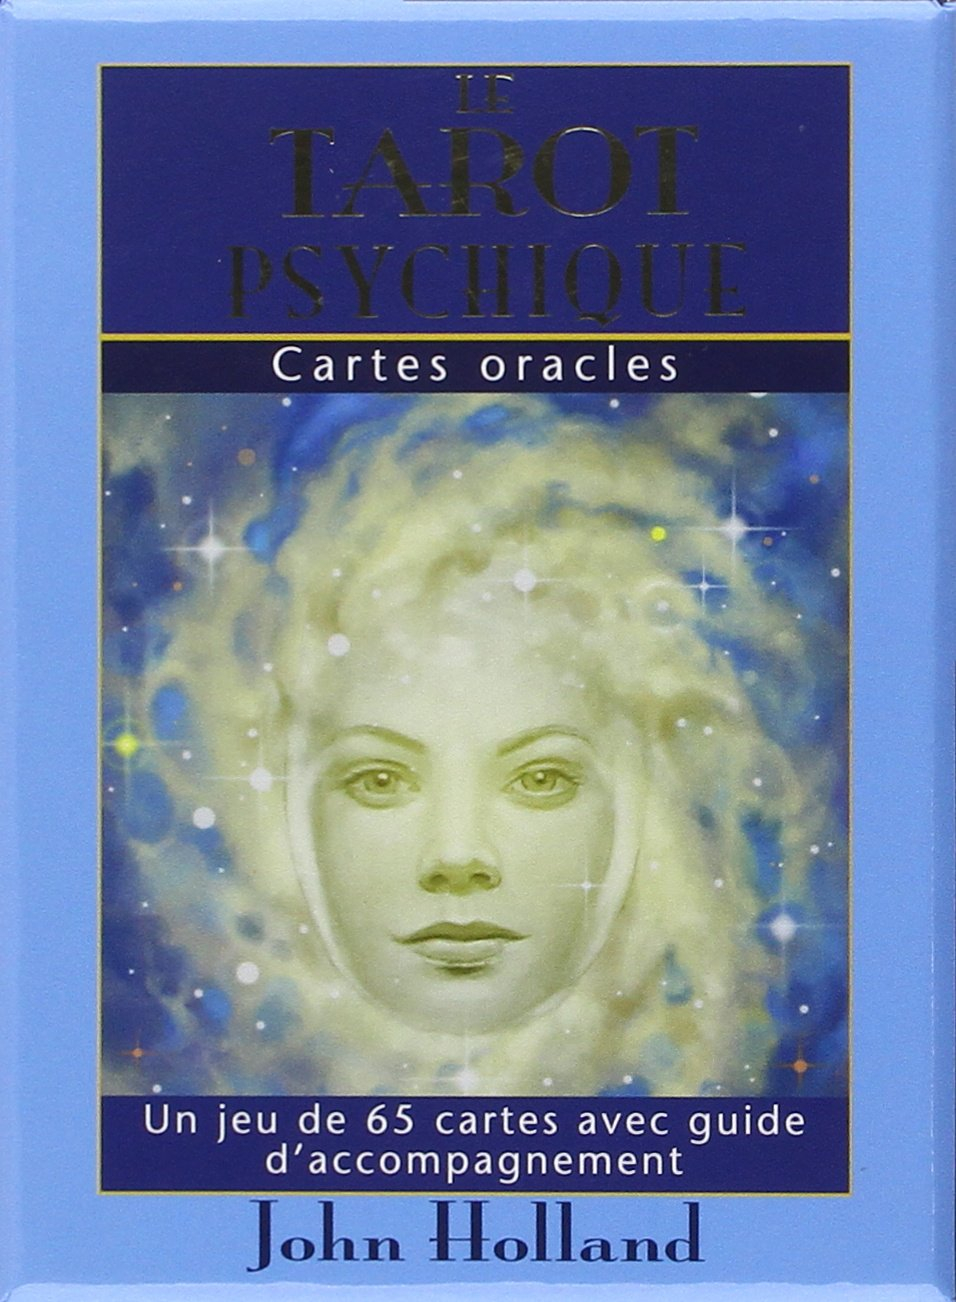 Le tarot psychique : cartes oracles